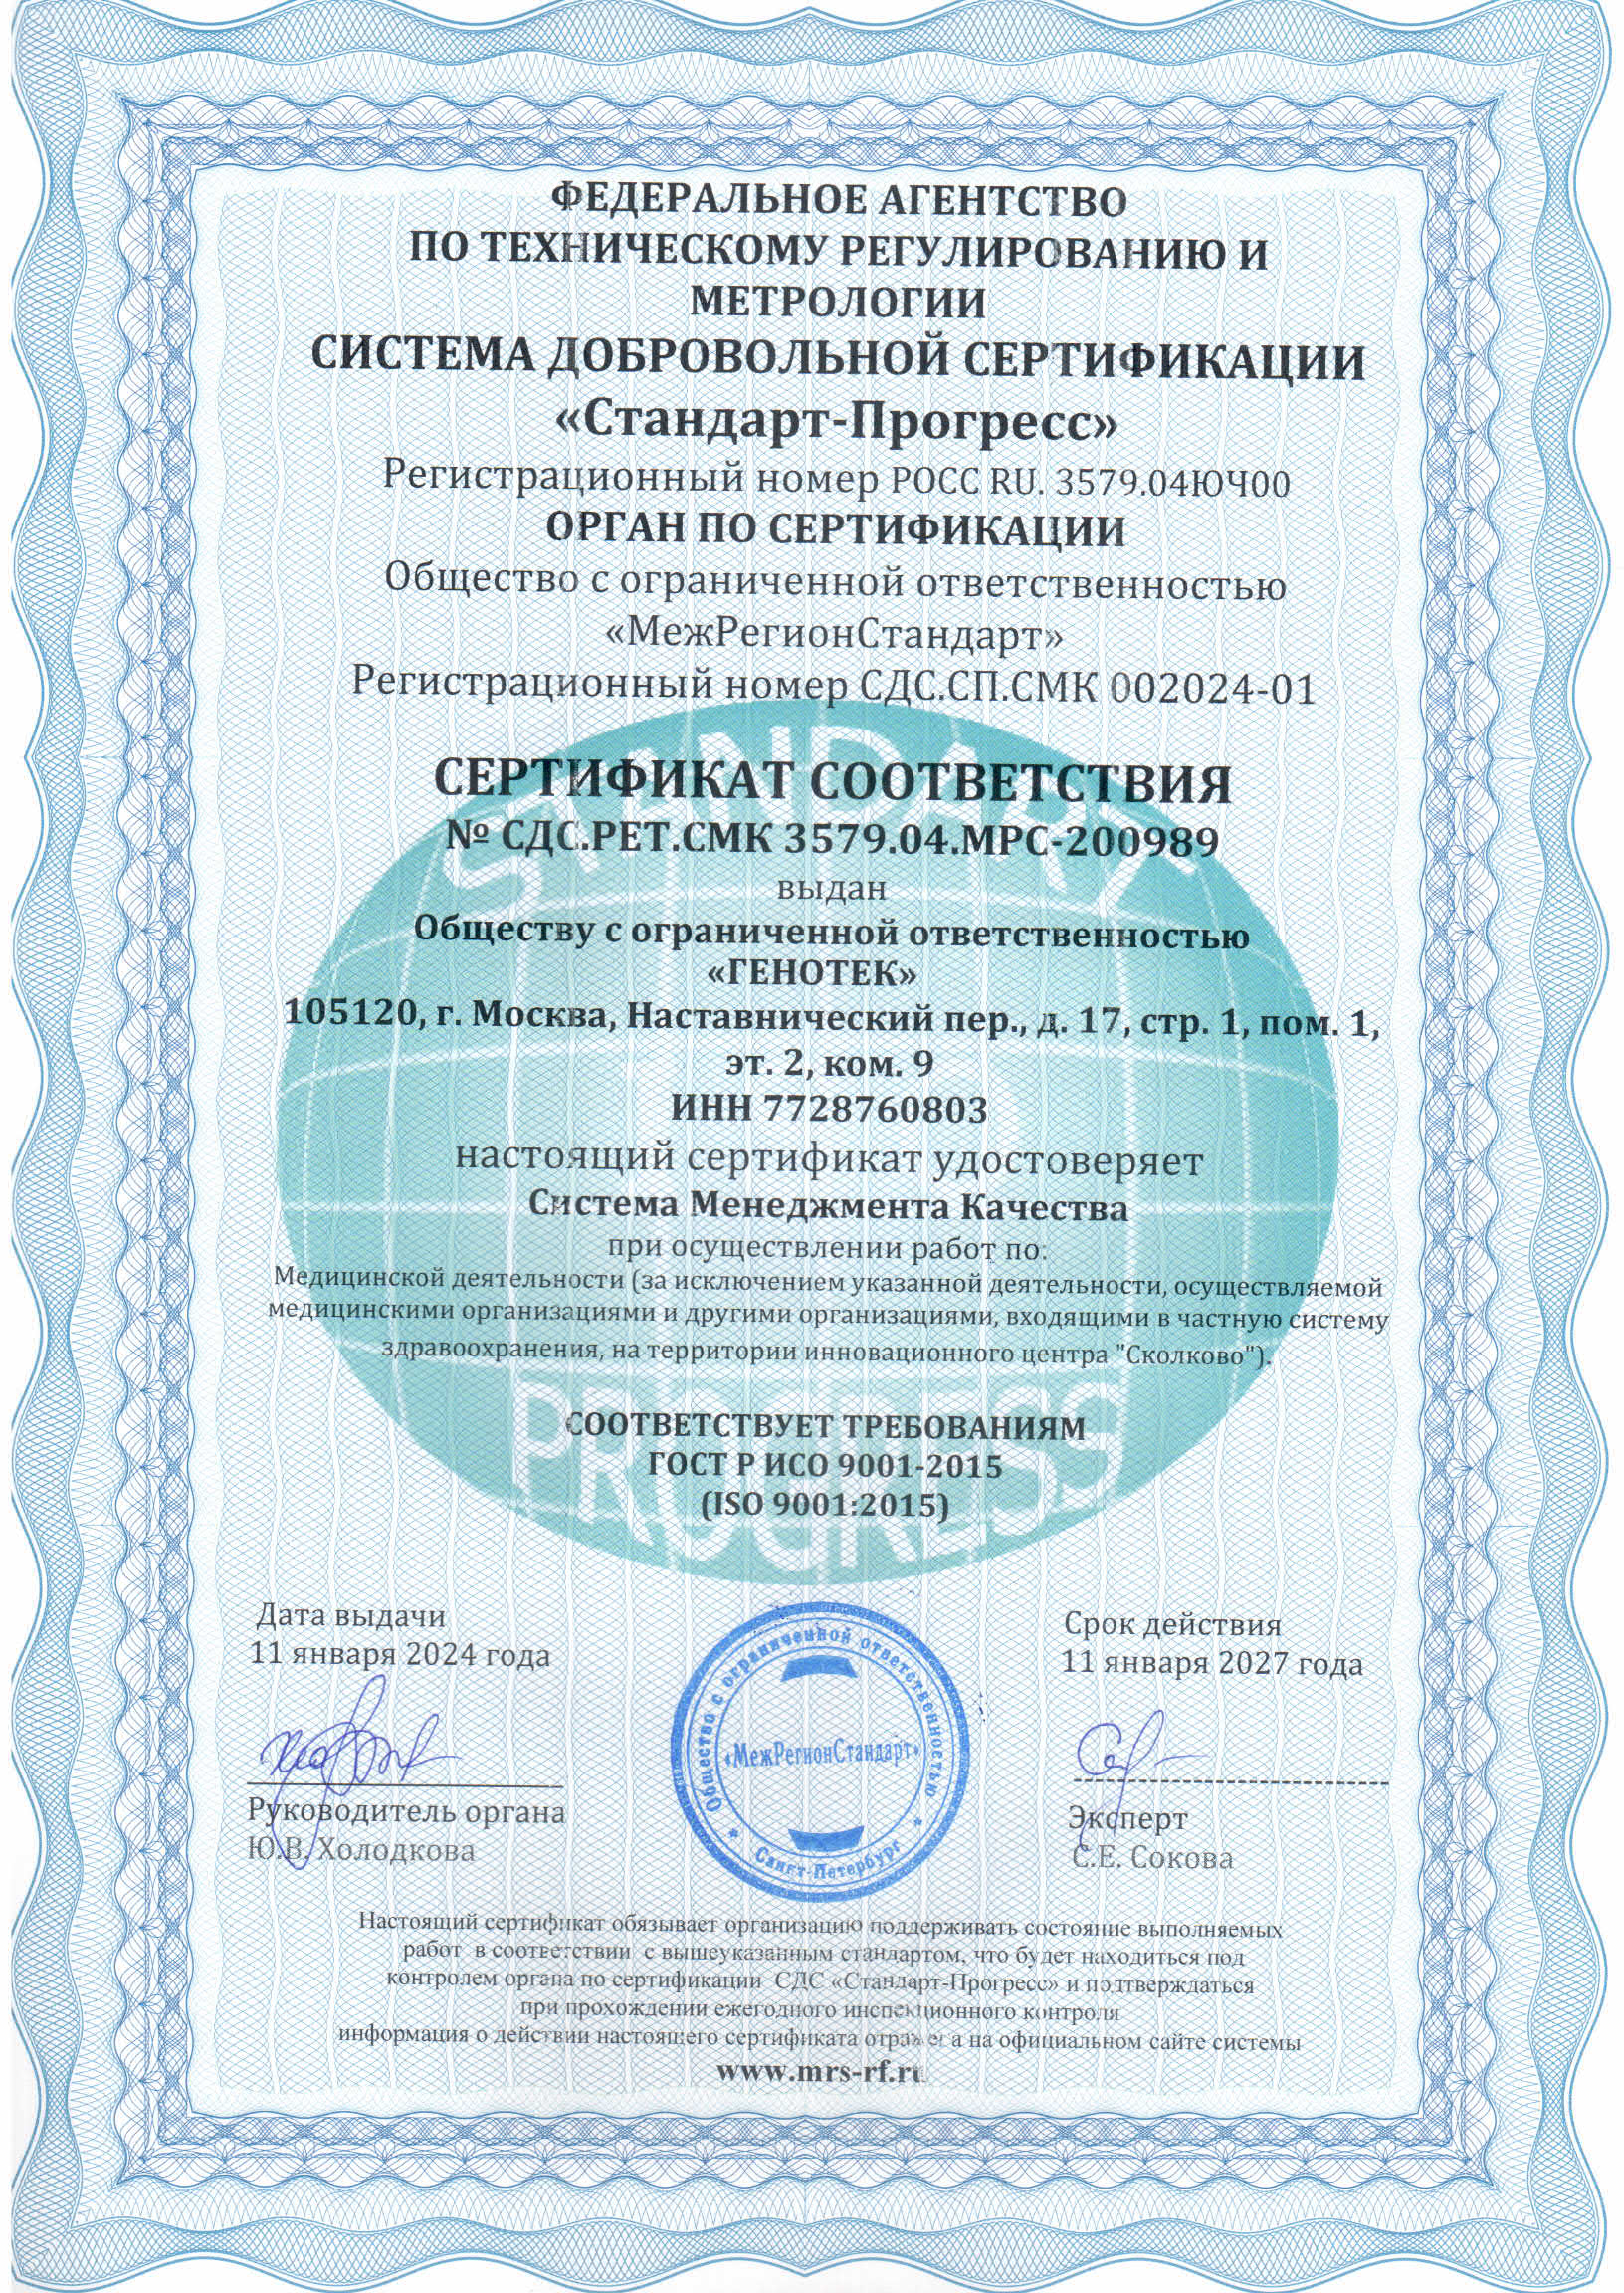 Сертификация систем менеджмента стандарт. Сертификат качества ИСО 9001. Сертификация системы менеджмента качества ISO 9001. Сертификат менеджмента качества ISO 9001 2015. Сертификат системы менеджмента качества СМК стандарта ISO 9001.